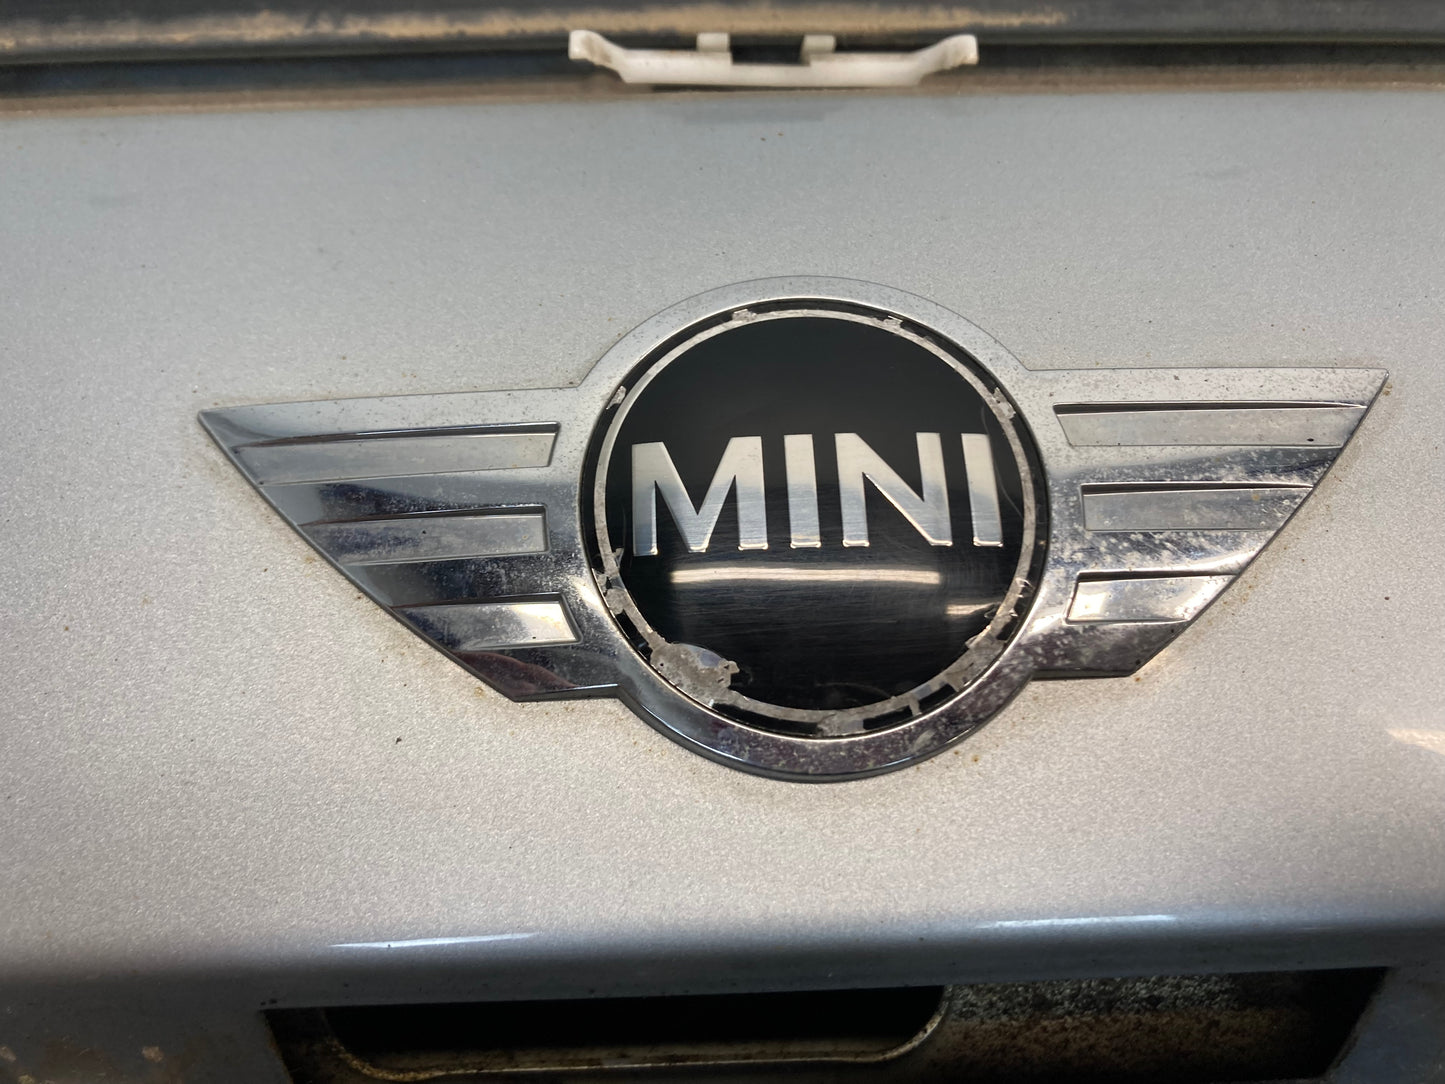 Mini Cooper Rear Hatch Pure Silver 41627139735 02-06 R50 R53 240